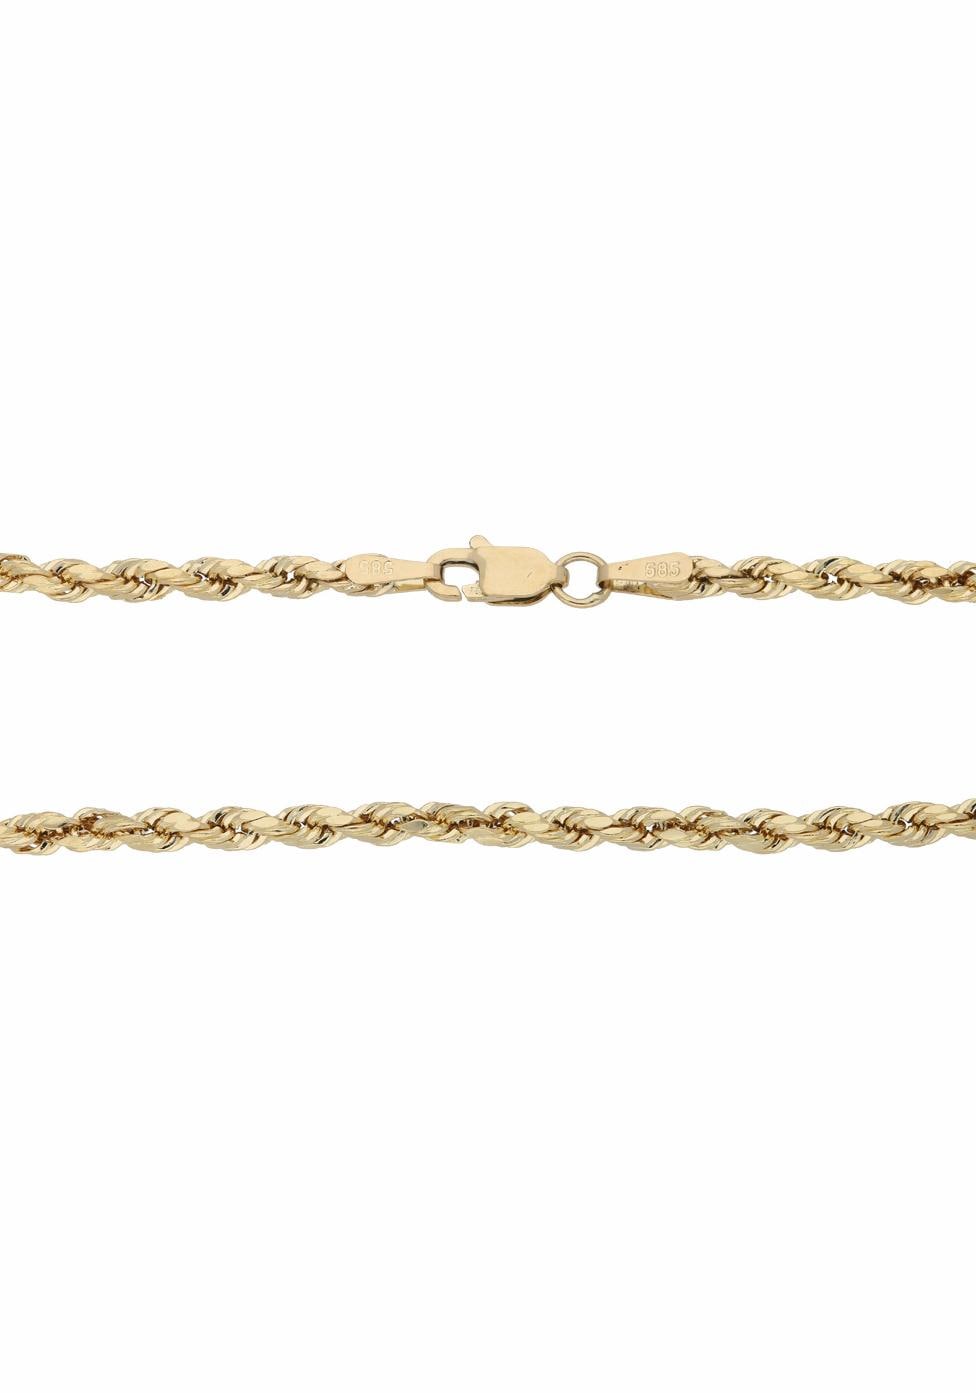 Korderlkettengliederung, kaufen Firetti Goldkette online »Schmuck Geschenk, glänzend«